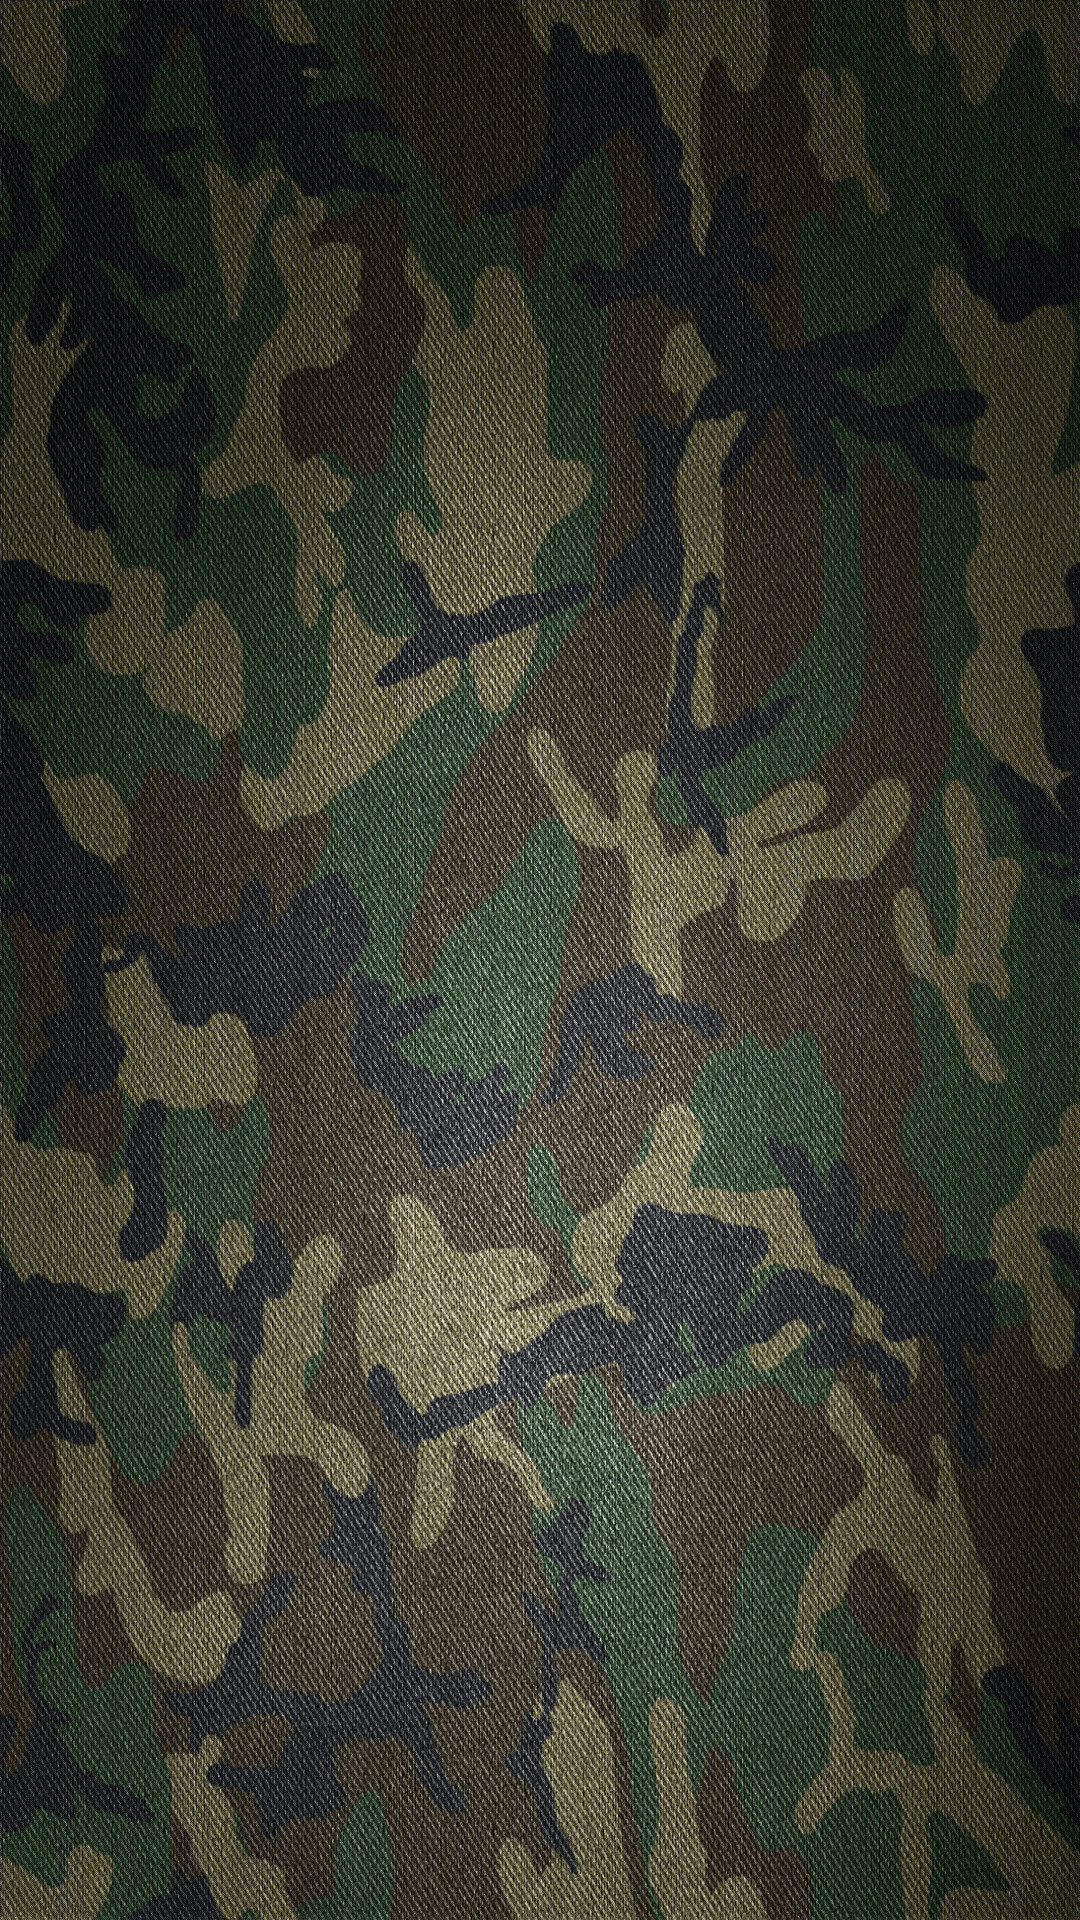 fonds d'écran cool camo,camouflage militaire,camouflage,modèle,vert,vêtements